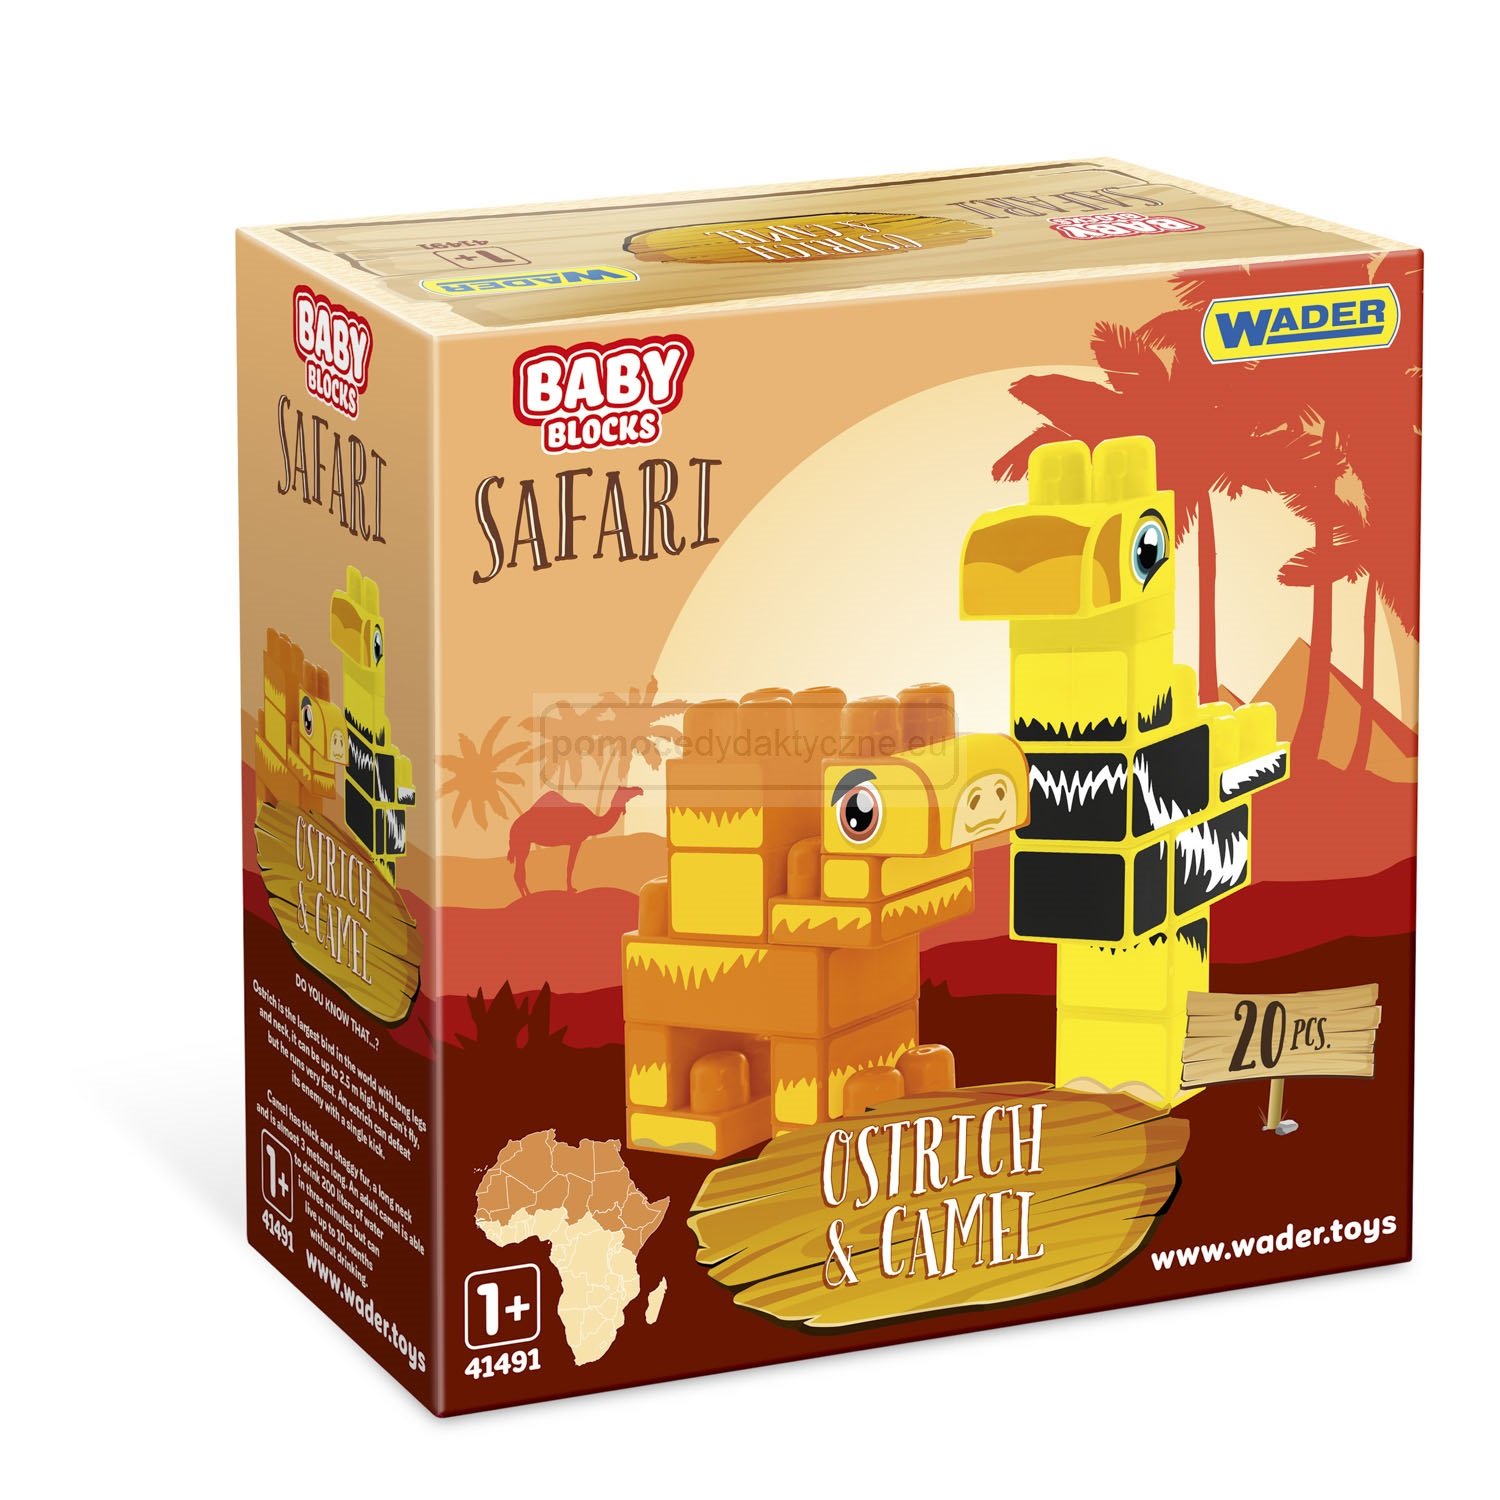 Baby Blocks Safari klocki struś i wielbłąd